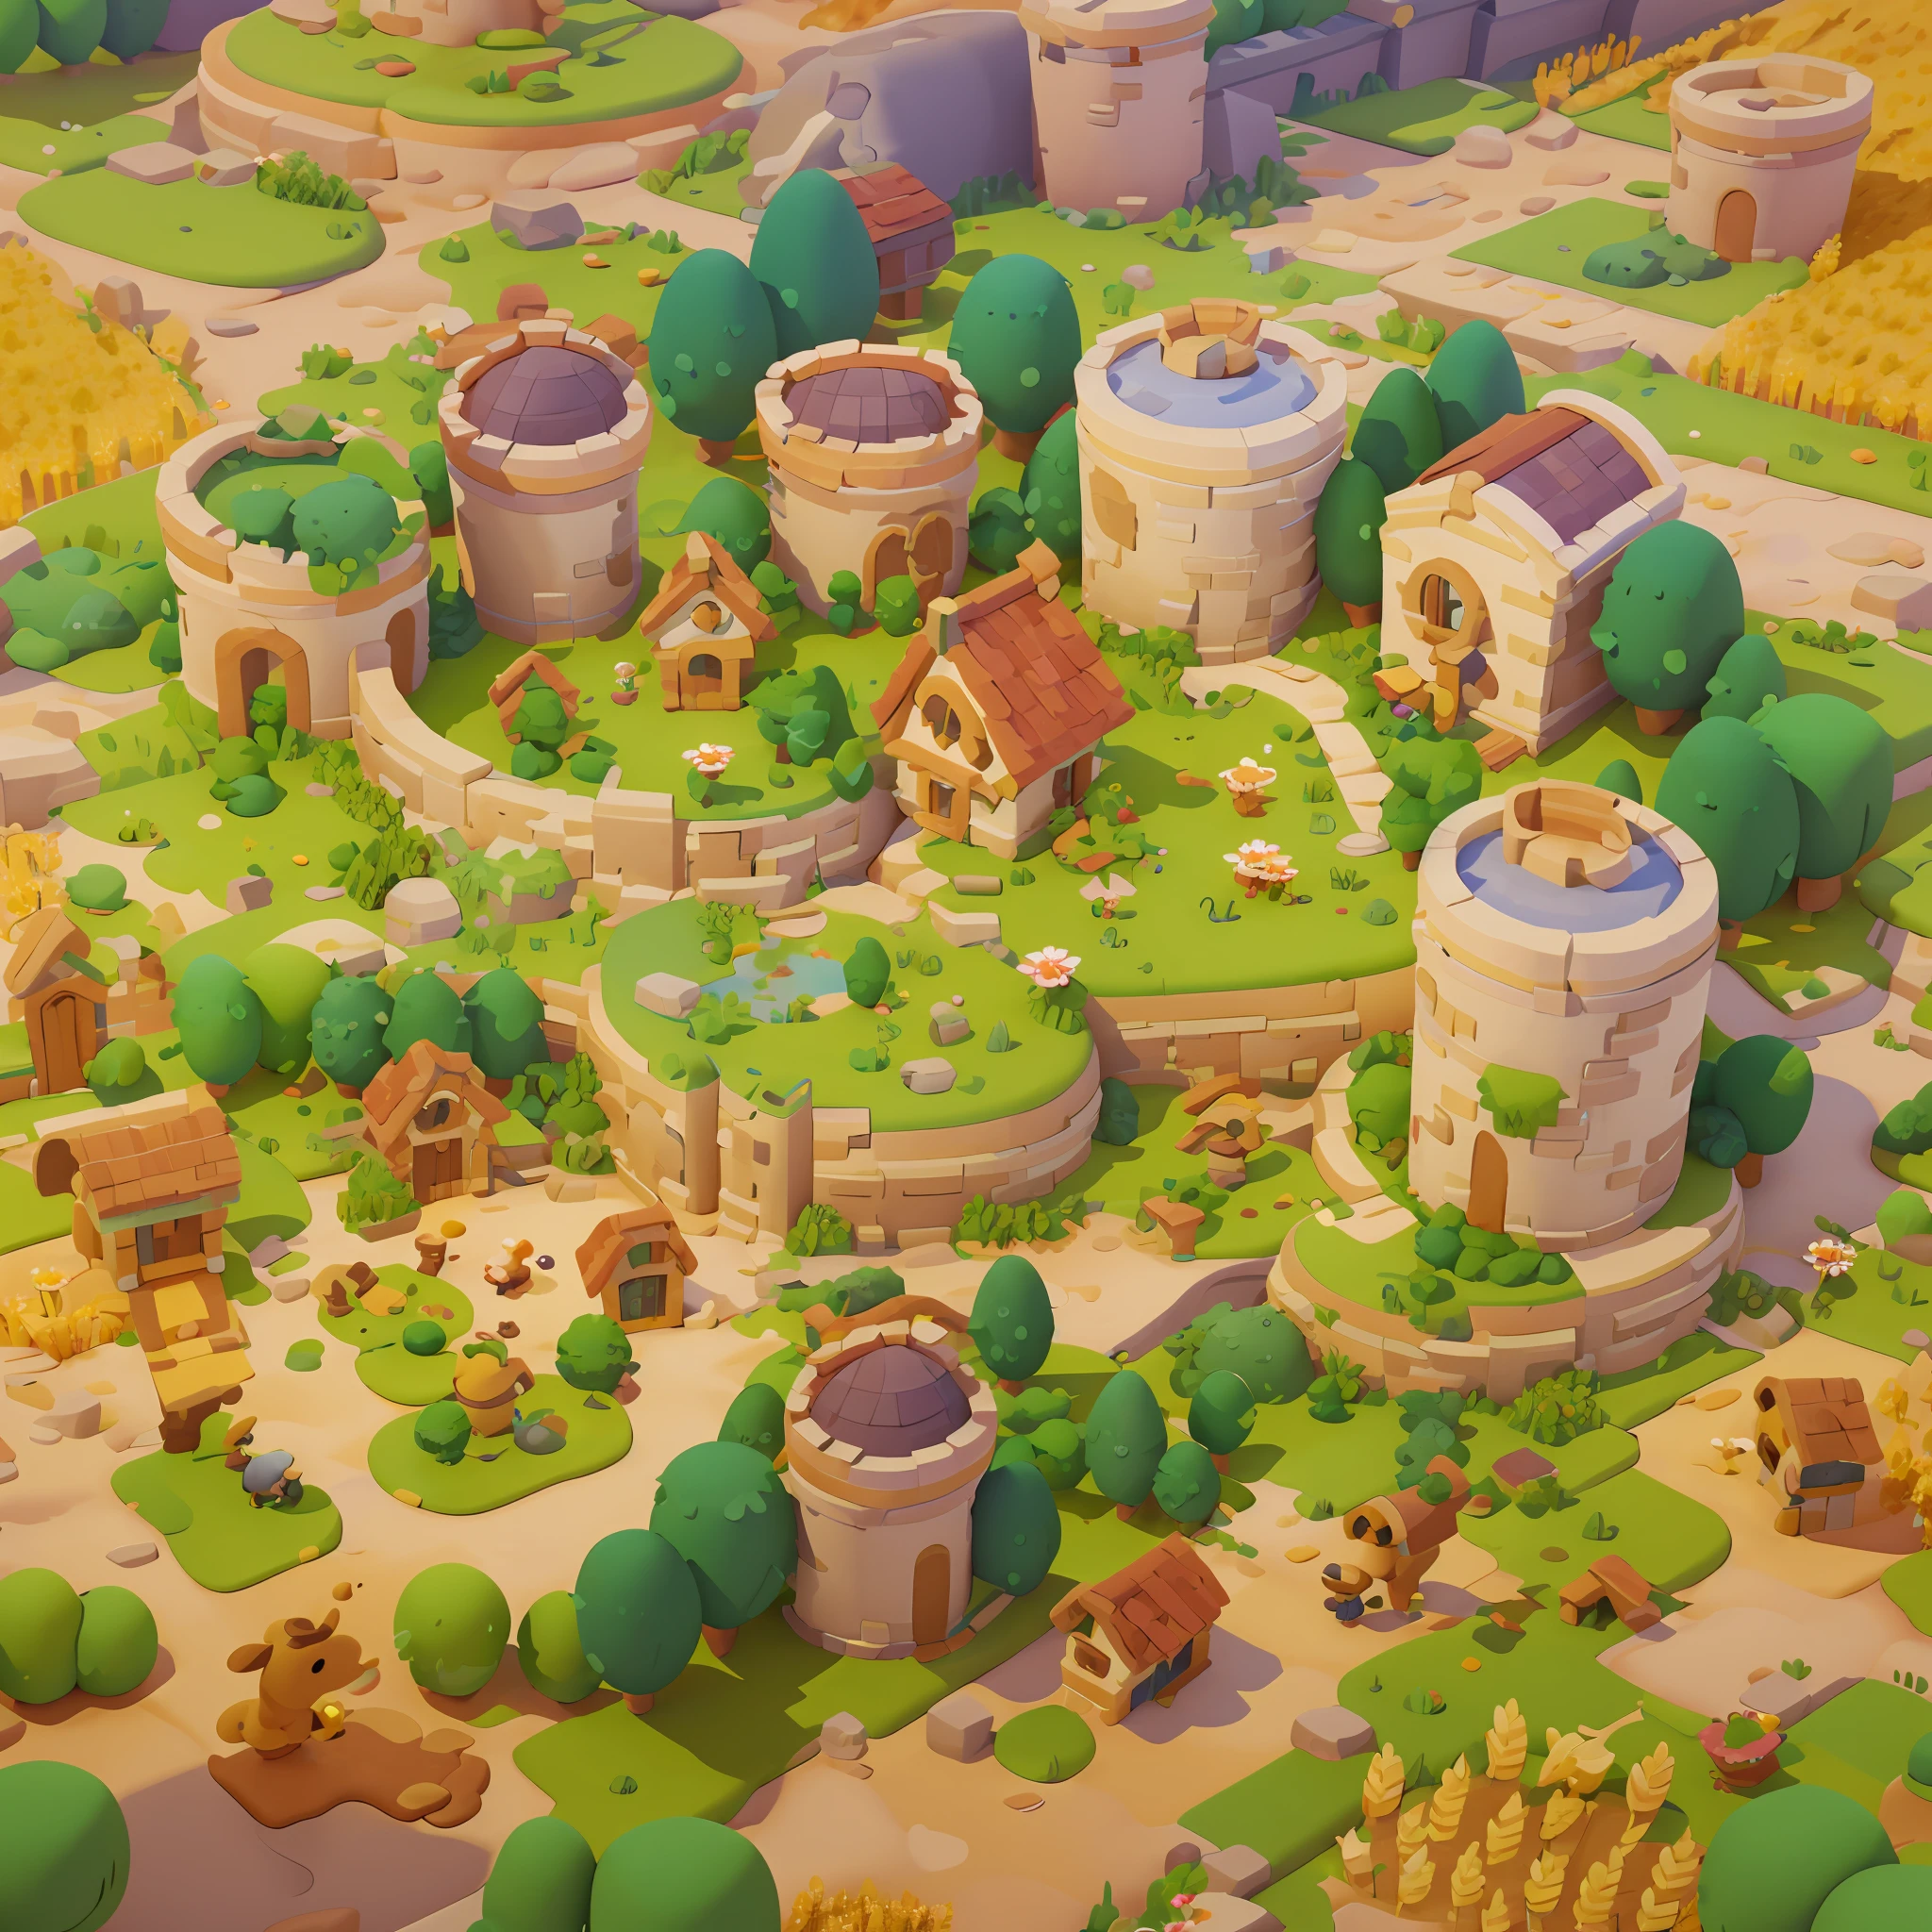 游戏架构设计, 卡通片, 农场, 城堡, 壁垒, 石头, 砖, 草, 河, 花朵, 蔬菜, 小麦, 树木, 动物, 休闲游戏风格, 3D, 搅拌机, 杰作, 超级细节, 最好的质量